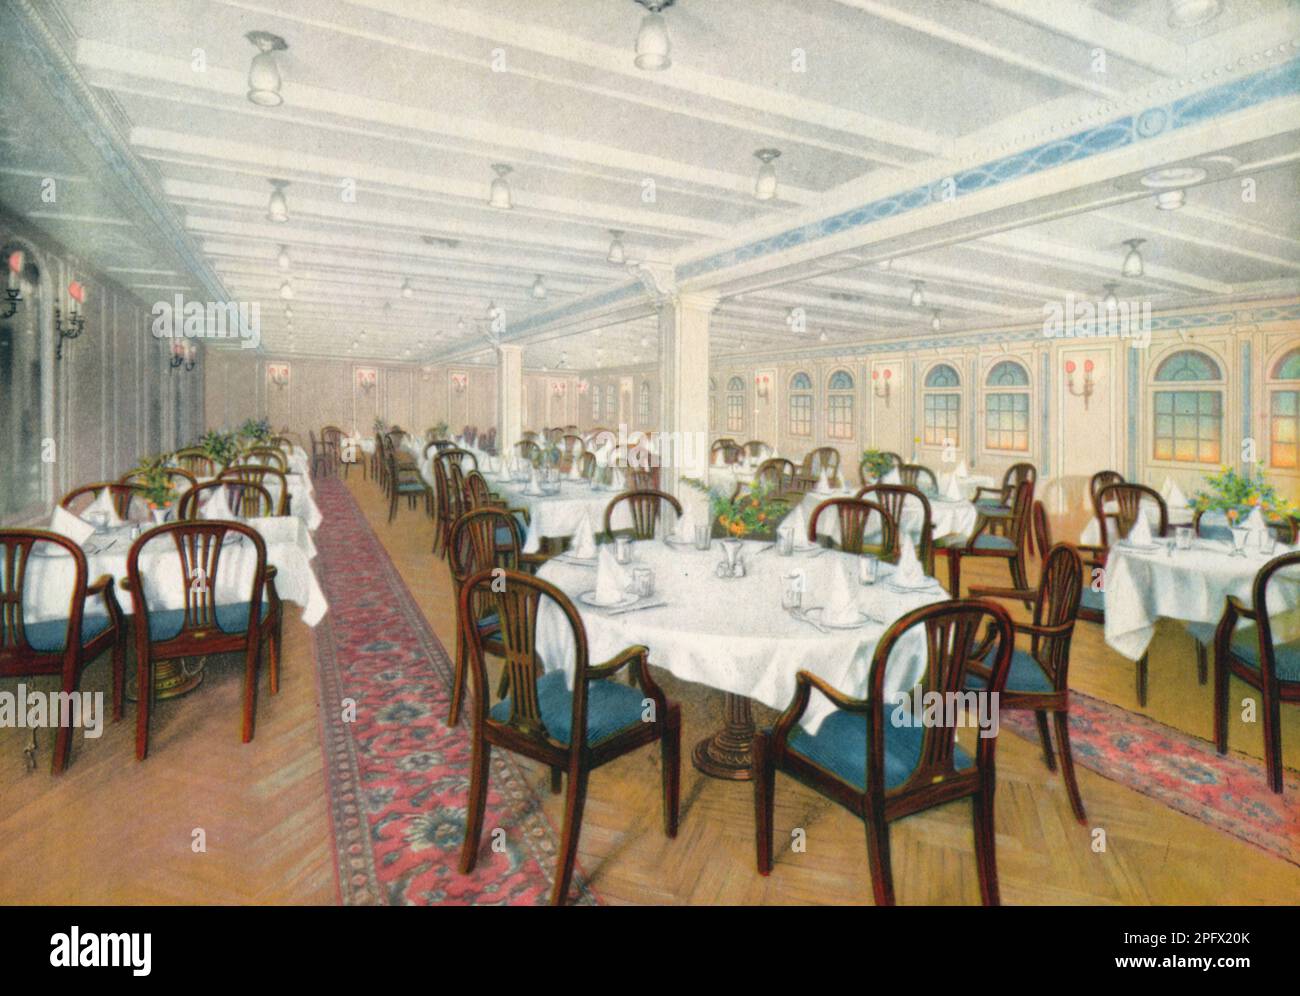 Navire suédois d'Amerika Linien M/S Gripsholm. Le navire livré en 1925 était le plus moderne de l'Atlantique à l'époque. Gripsholms d'une longueur de 168,5 mètres et d'une largeur de 22,7 mètres était un véritable palais flottant de luxe et les célébrités de l'époque ont voyagé ici. Voici une image de l'intérieur de la salle à manger de deuxième classe, qui est décorée dans le magnifique style gustavien. Banque D'Images